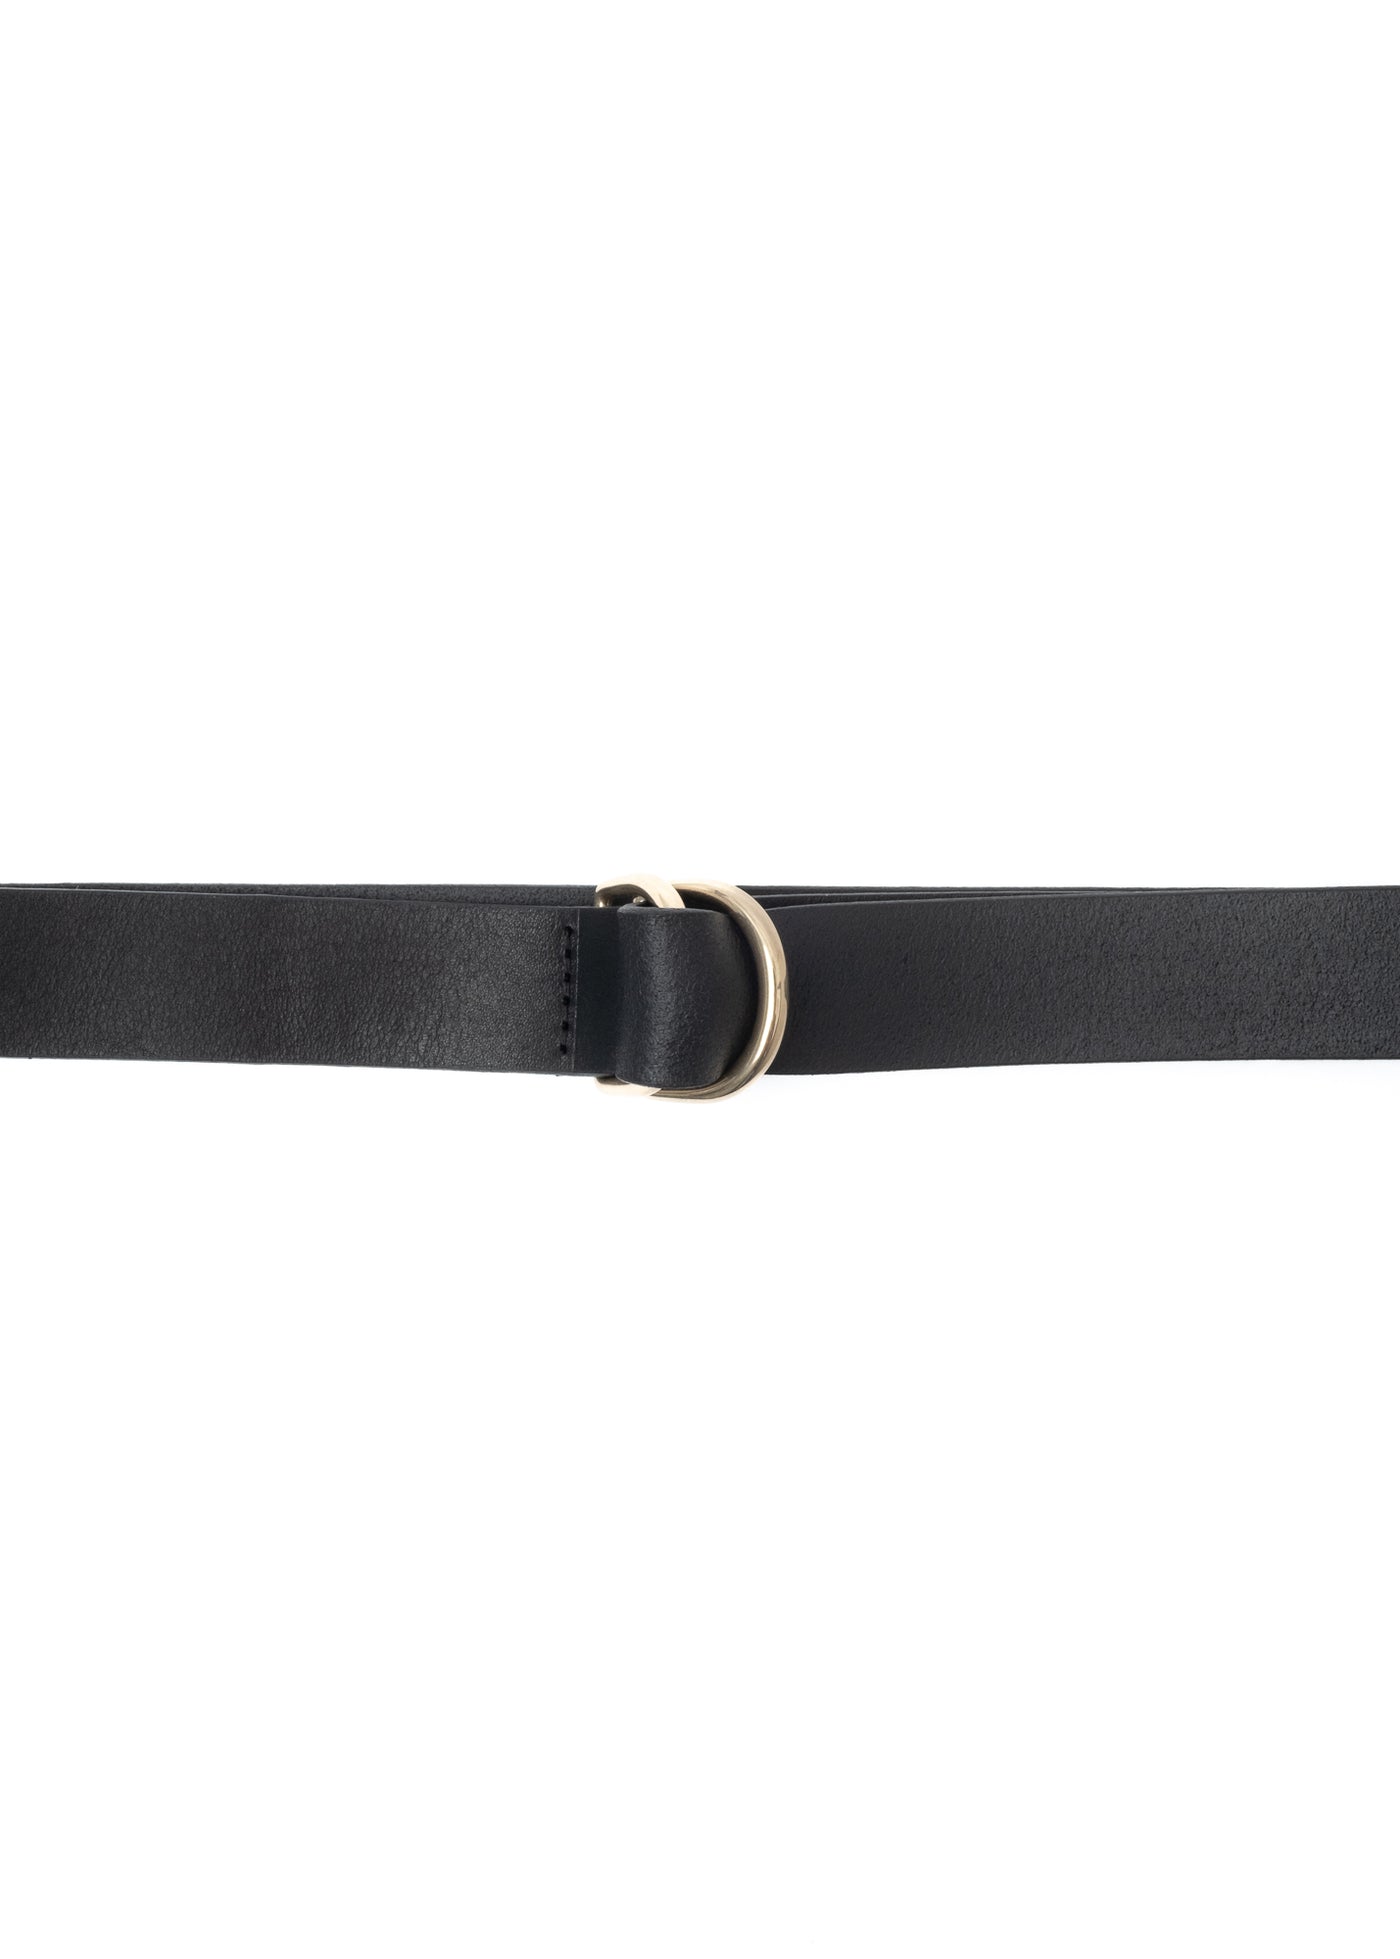 G.o.D Belt Long Leather Black